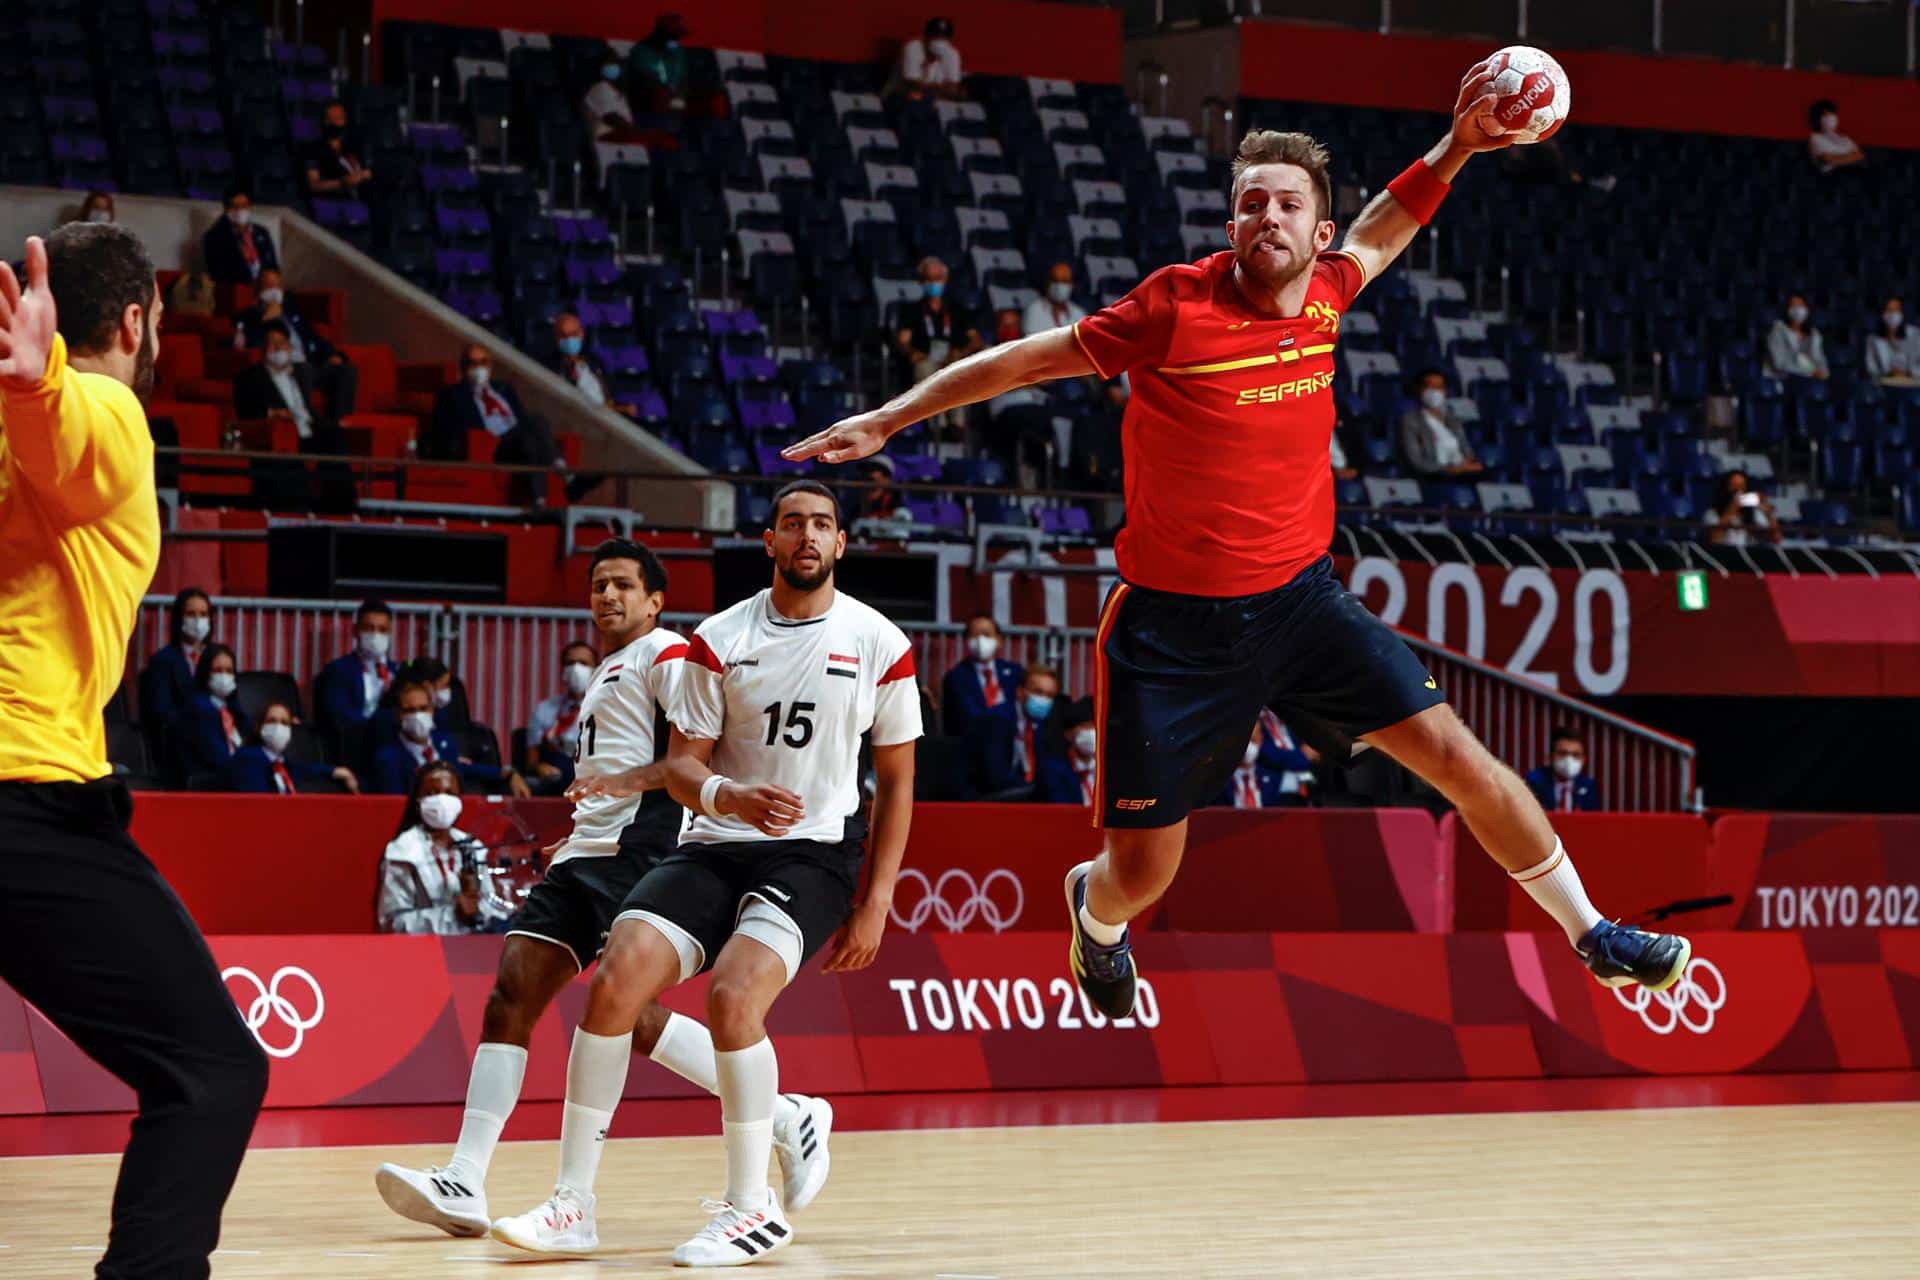 El español Aleix Gómez lanza a portería durante el encuentro masculino de balonmano por la medalla de bronce entre España y Egipto